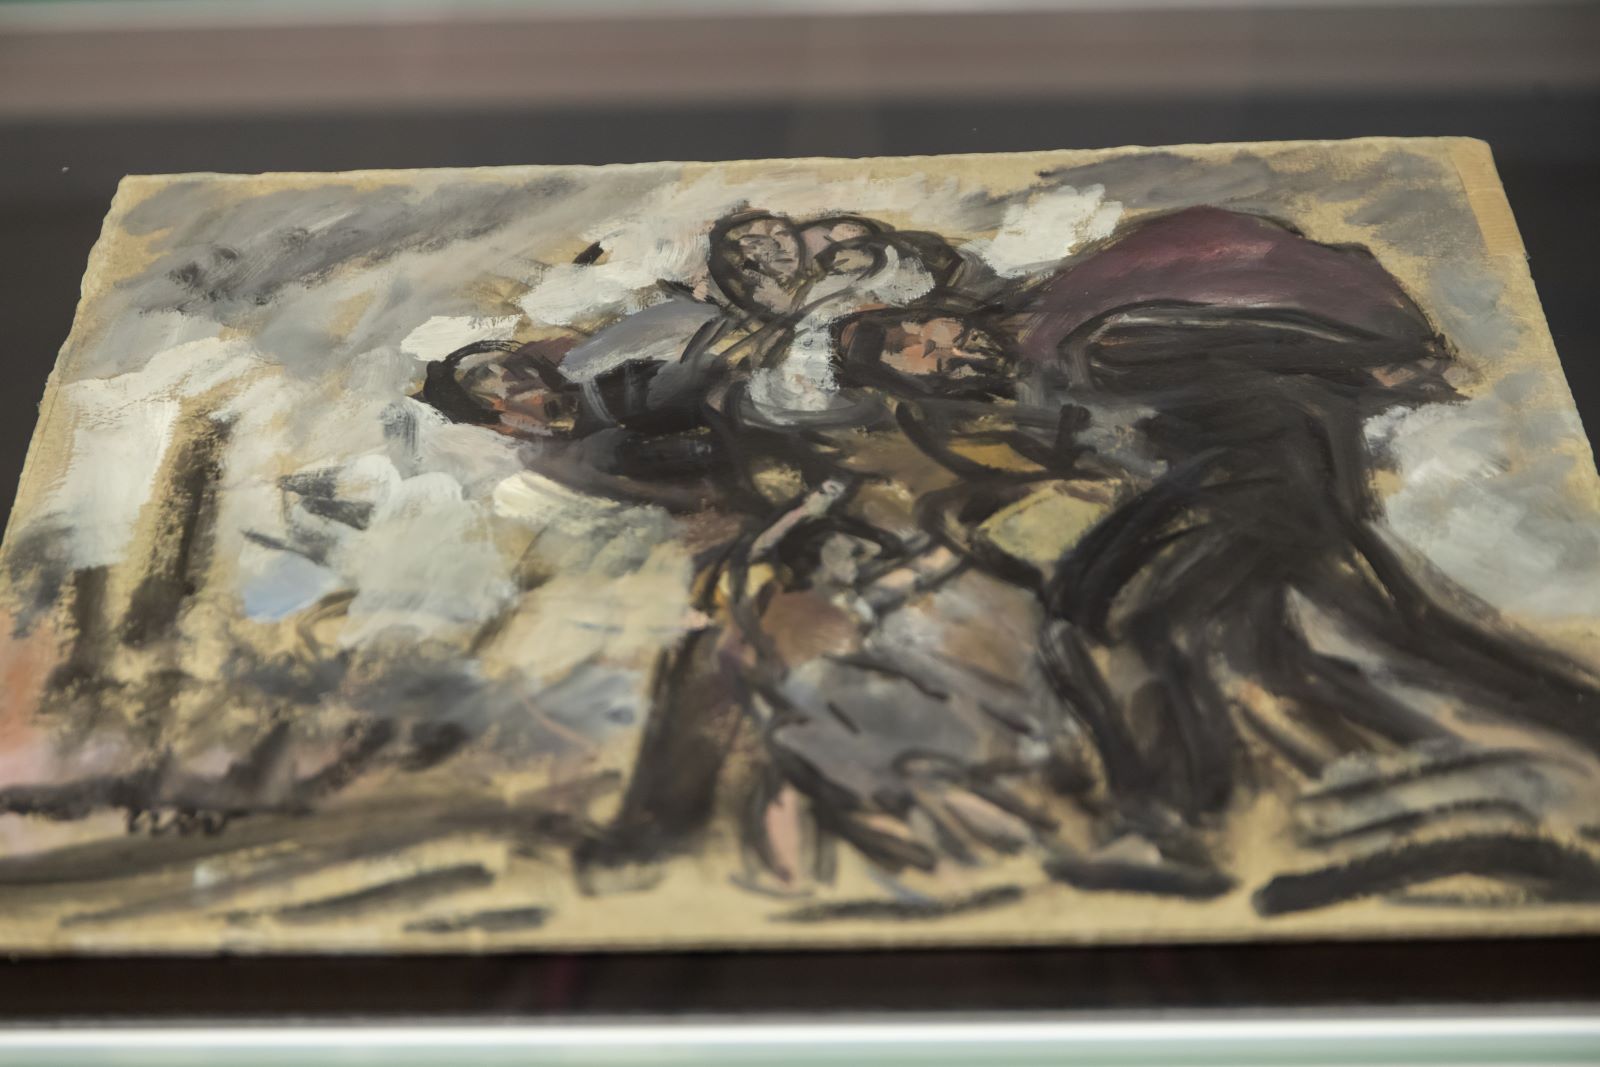 Szkic olejny "Wygnanie" Wojciecha Weissea. Przedstawia skulone, uciekające postacie.